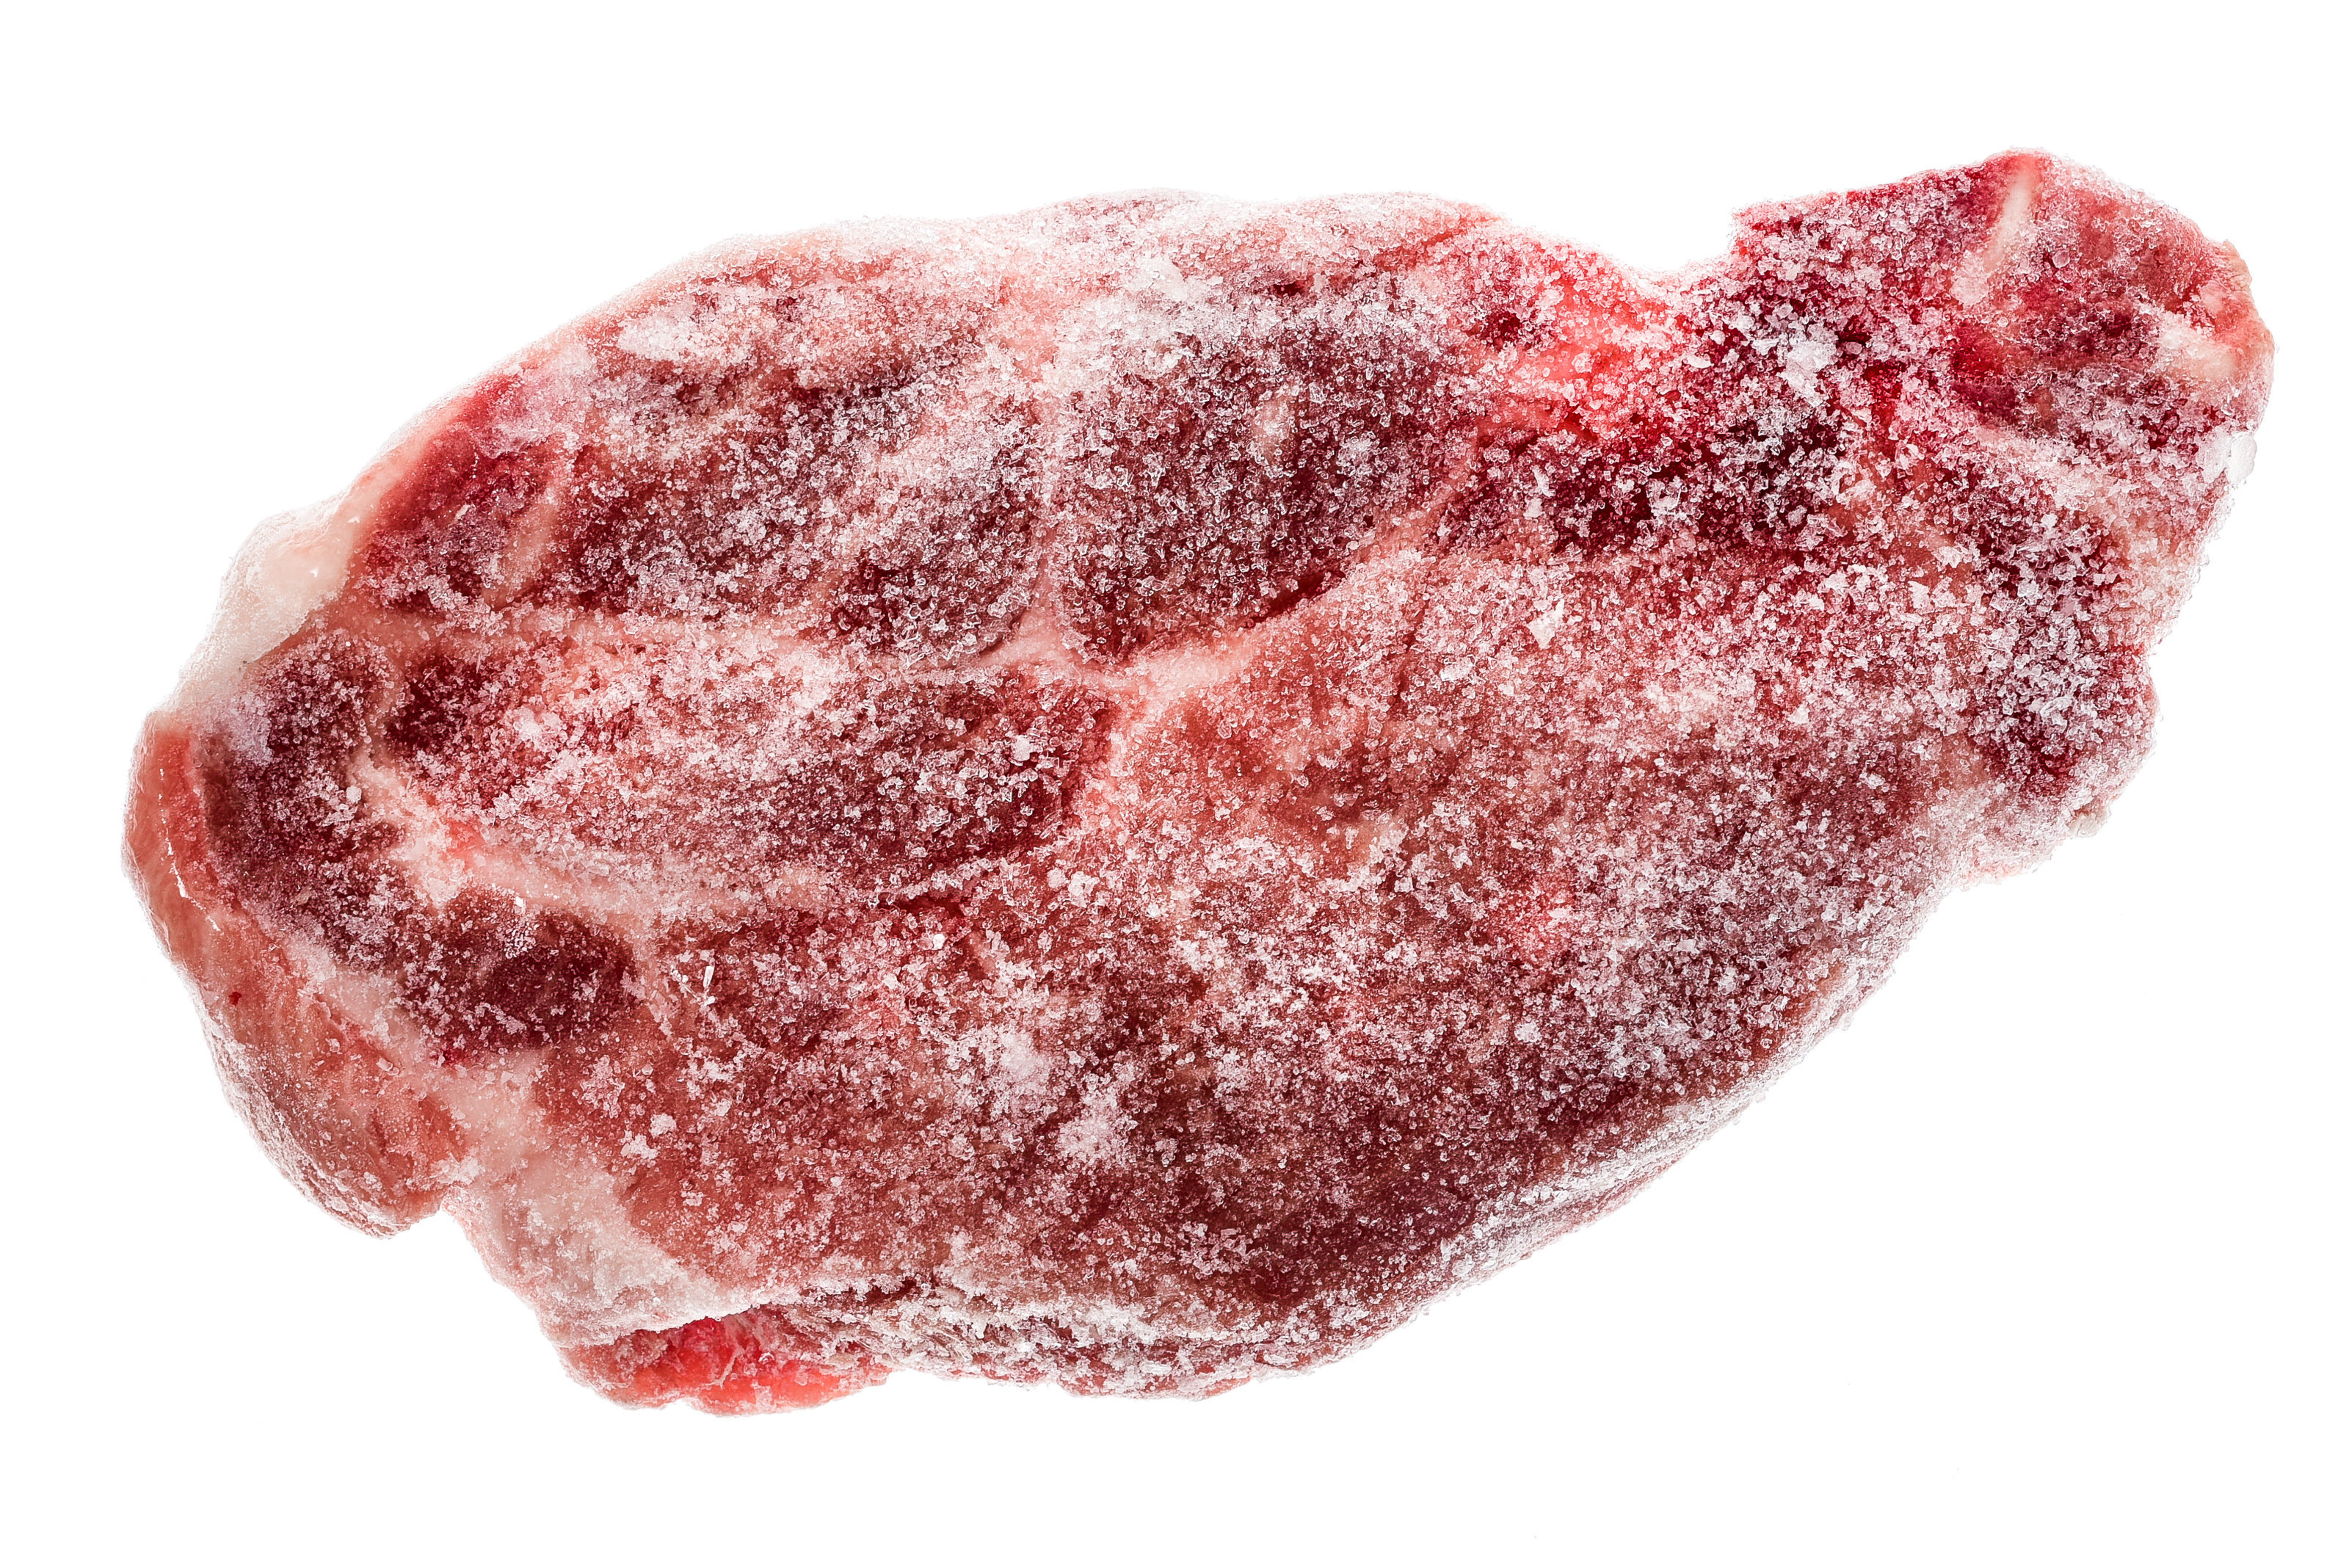 Frozen Meat Expiration Chart